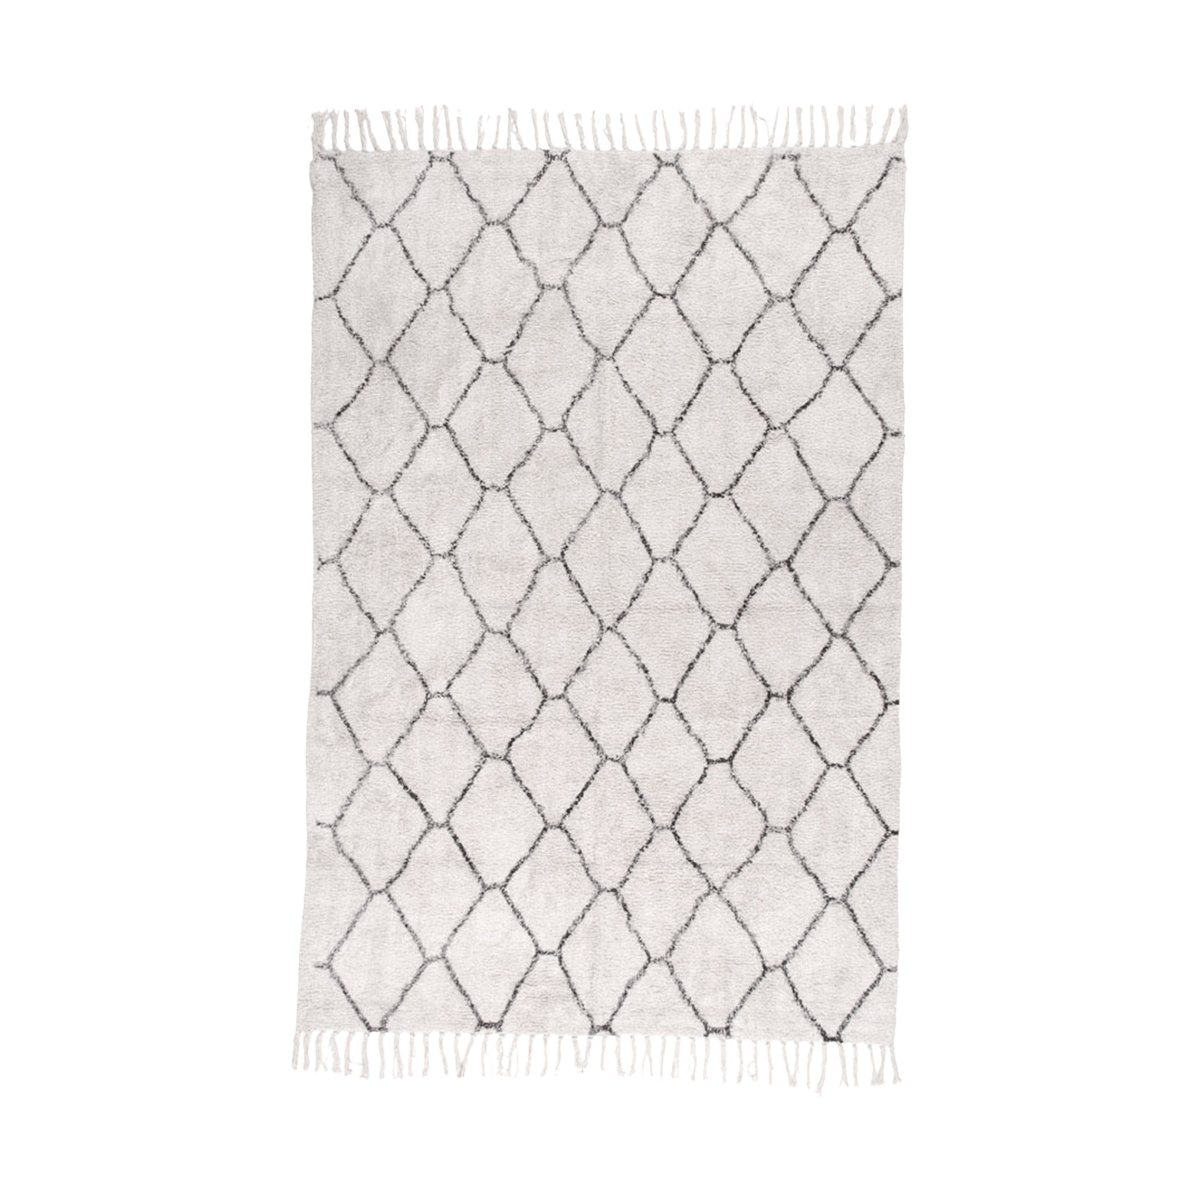 Jeannet vloerkleed gebroken wit - 180 x 120 cm